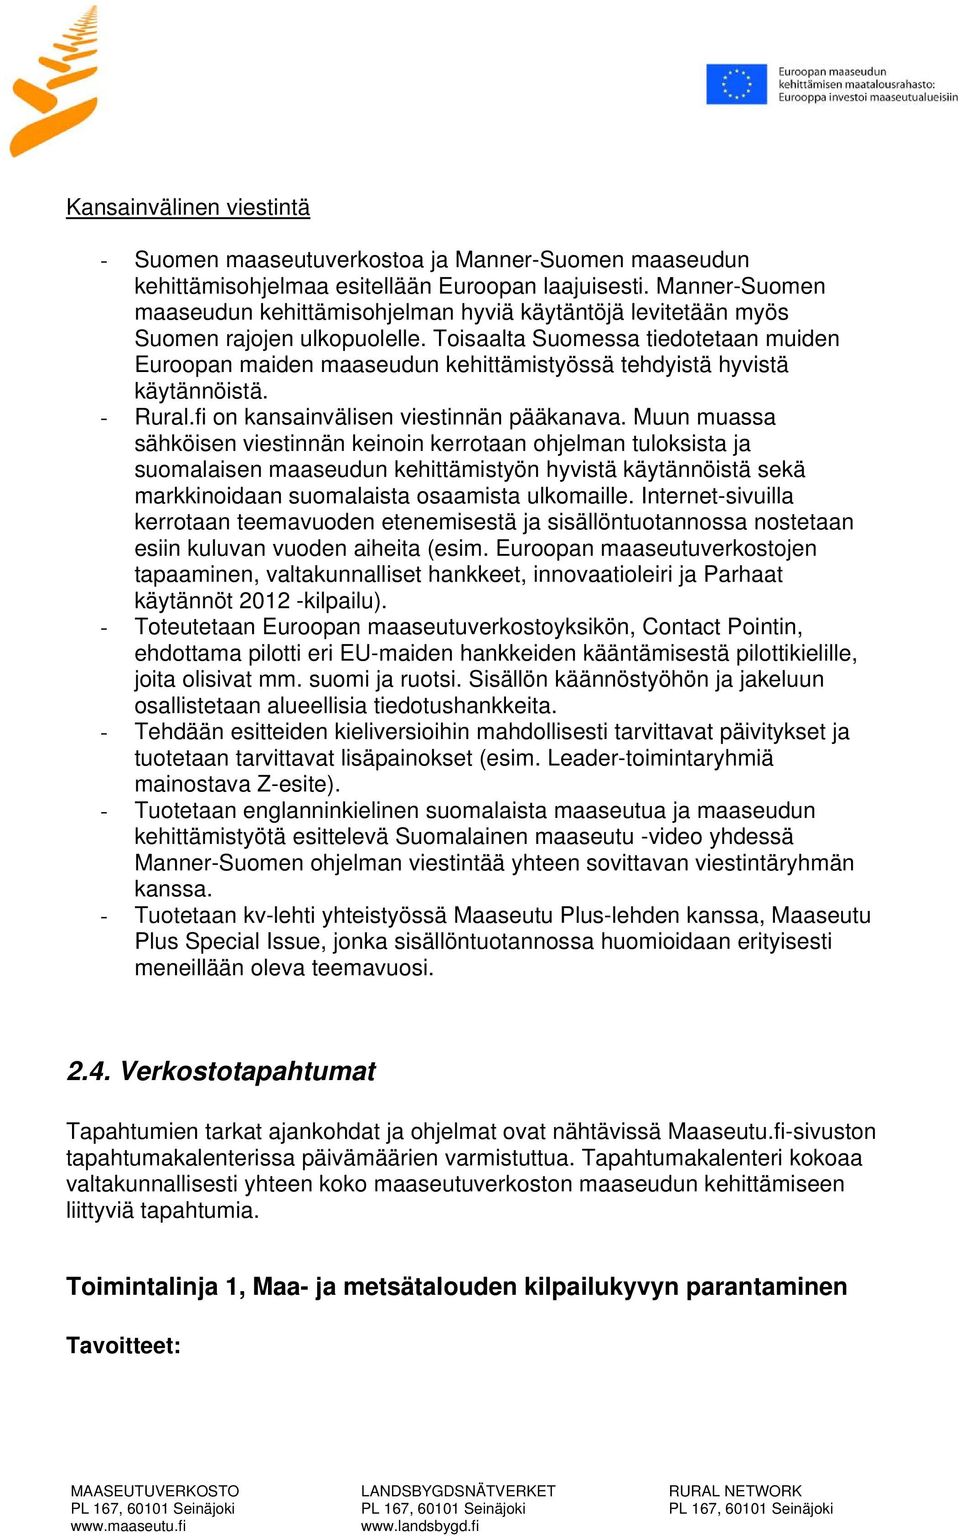 Toisaalta Suomessa tiedotetaan muiden Euroopan maiden maaseudun kehittämistyössä tehdyistä hyvistä käytännöistä. - Rural.fi on kansainvälisen viestinnän pääkanava.